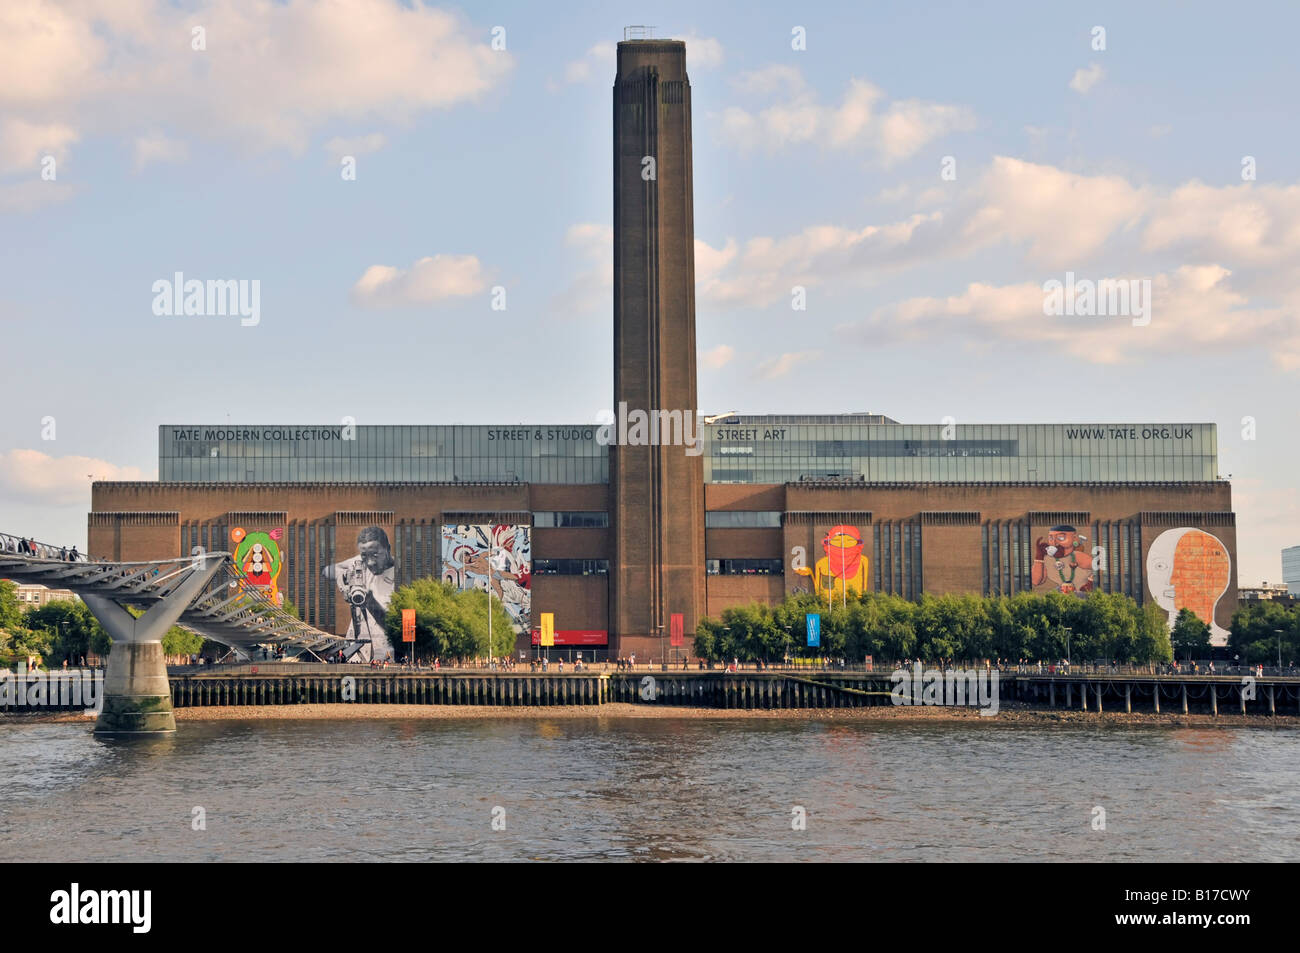 Vista sul Fiume Tamigi con Millennium Bridge & Tate Modern street art display su pareti di ridondante ricondizionato Bankside power station England Regno Unito Foto Stock